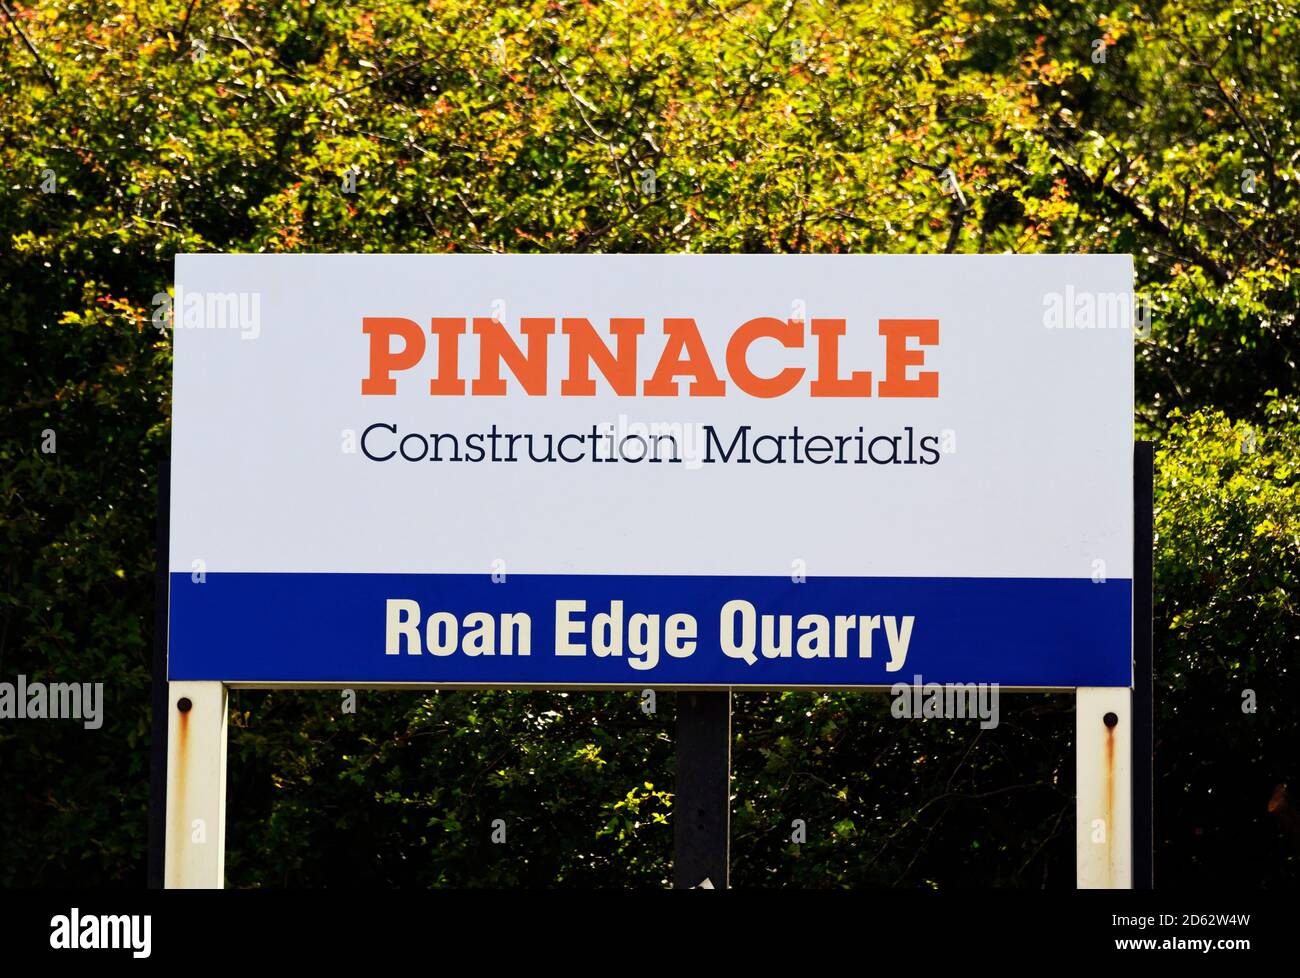 Panneau. Matériaux de construction Pinnacle. Roan Edge Quarry, Cemex R.-U., New Hutton, Kendal, Cumbria, Angleterre, Royaume-Uni, Europe. Banque D'Images